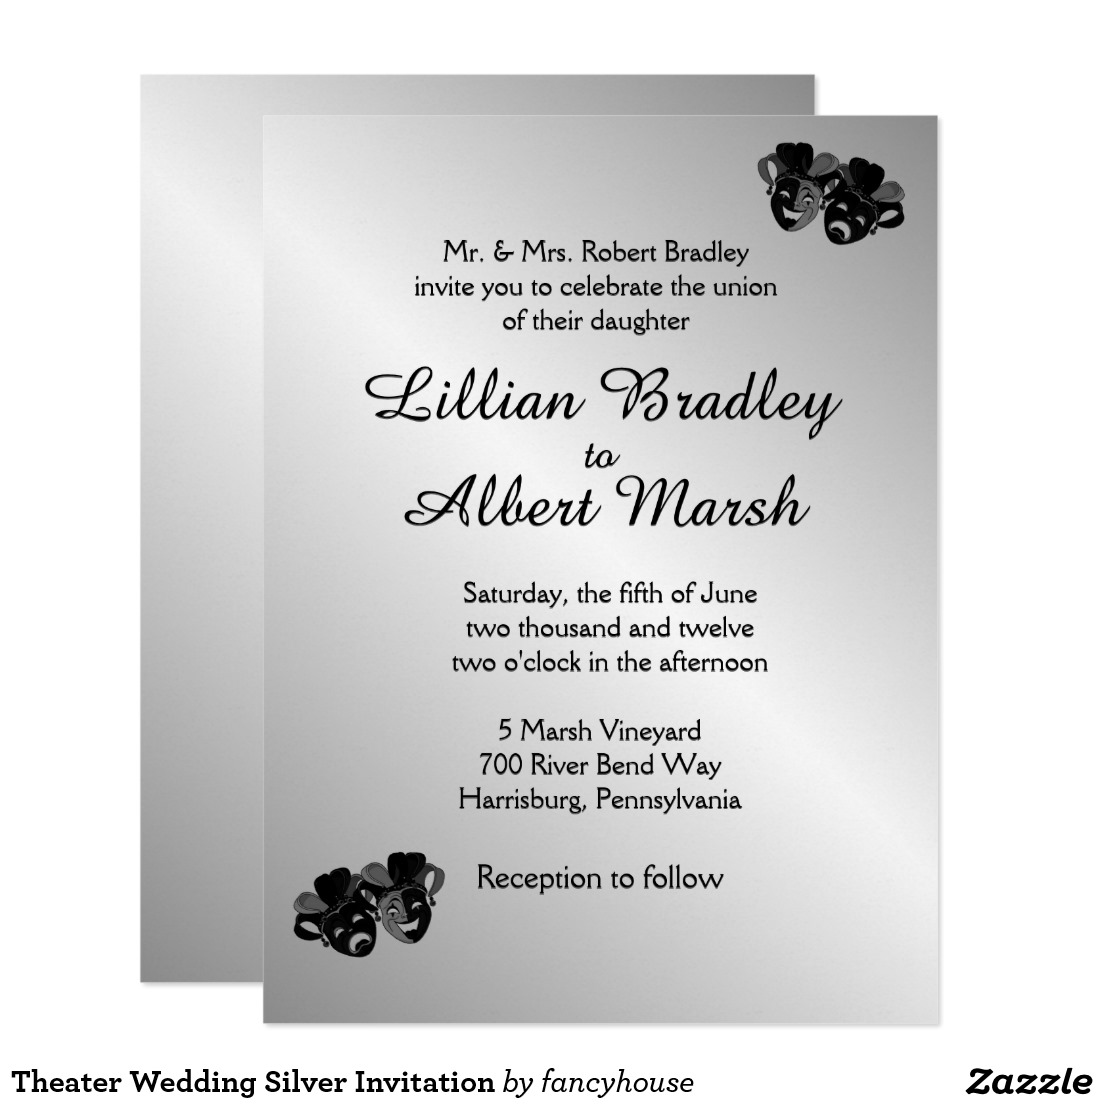 Theater Wedding Silver Invitation